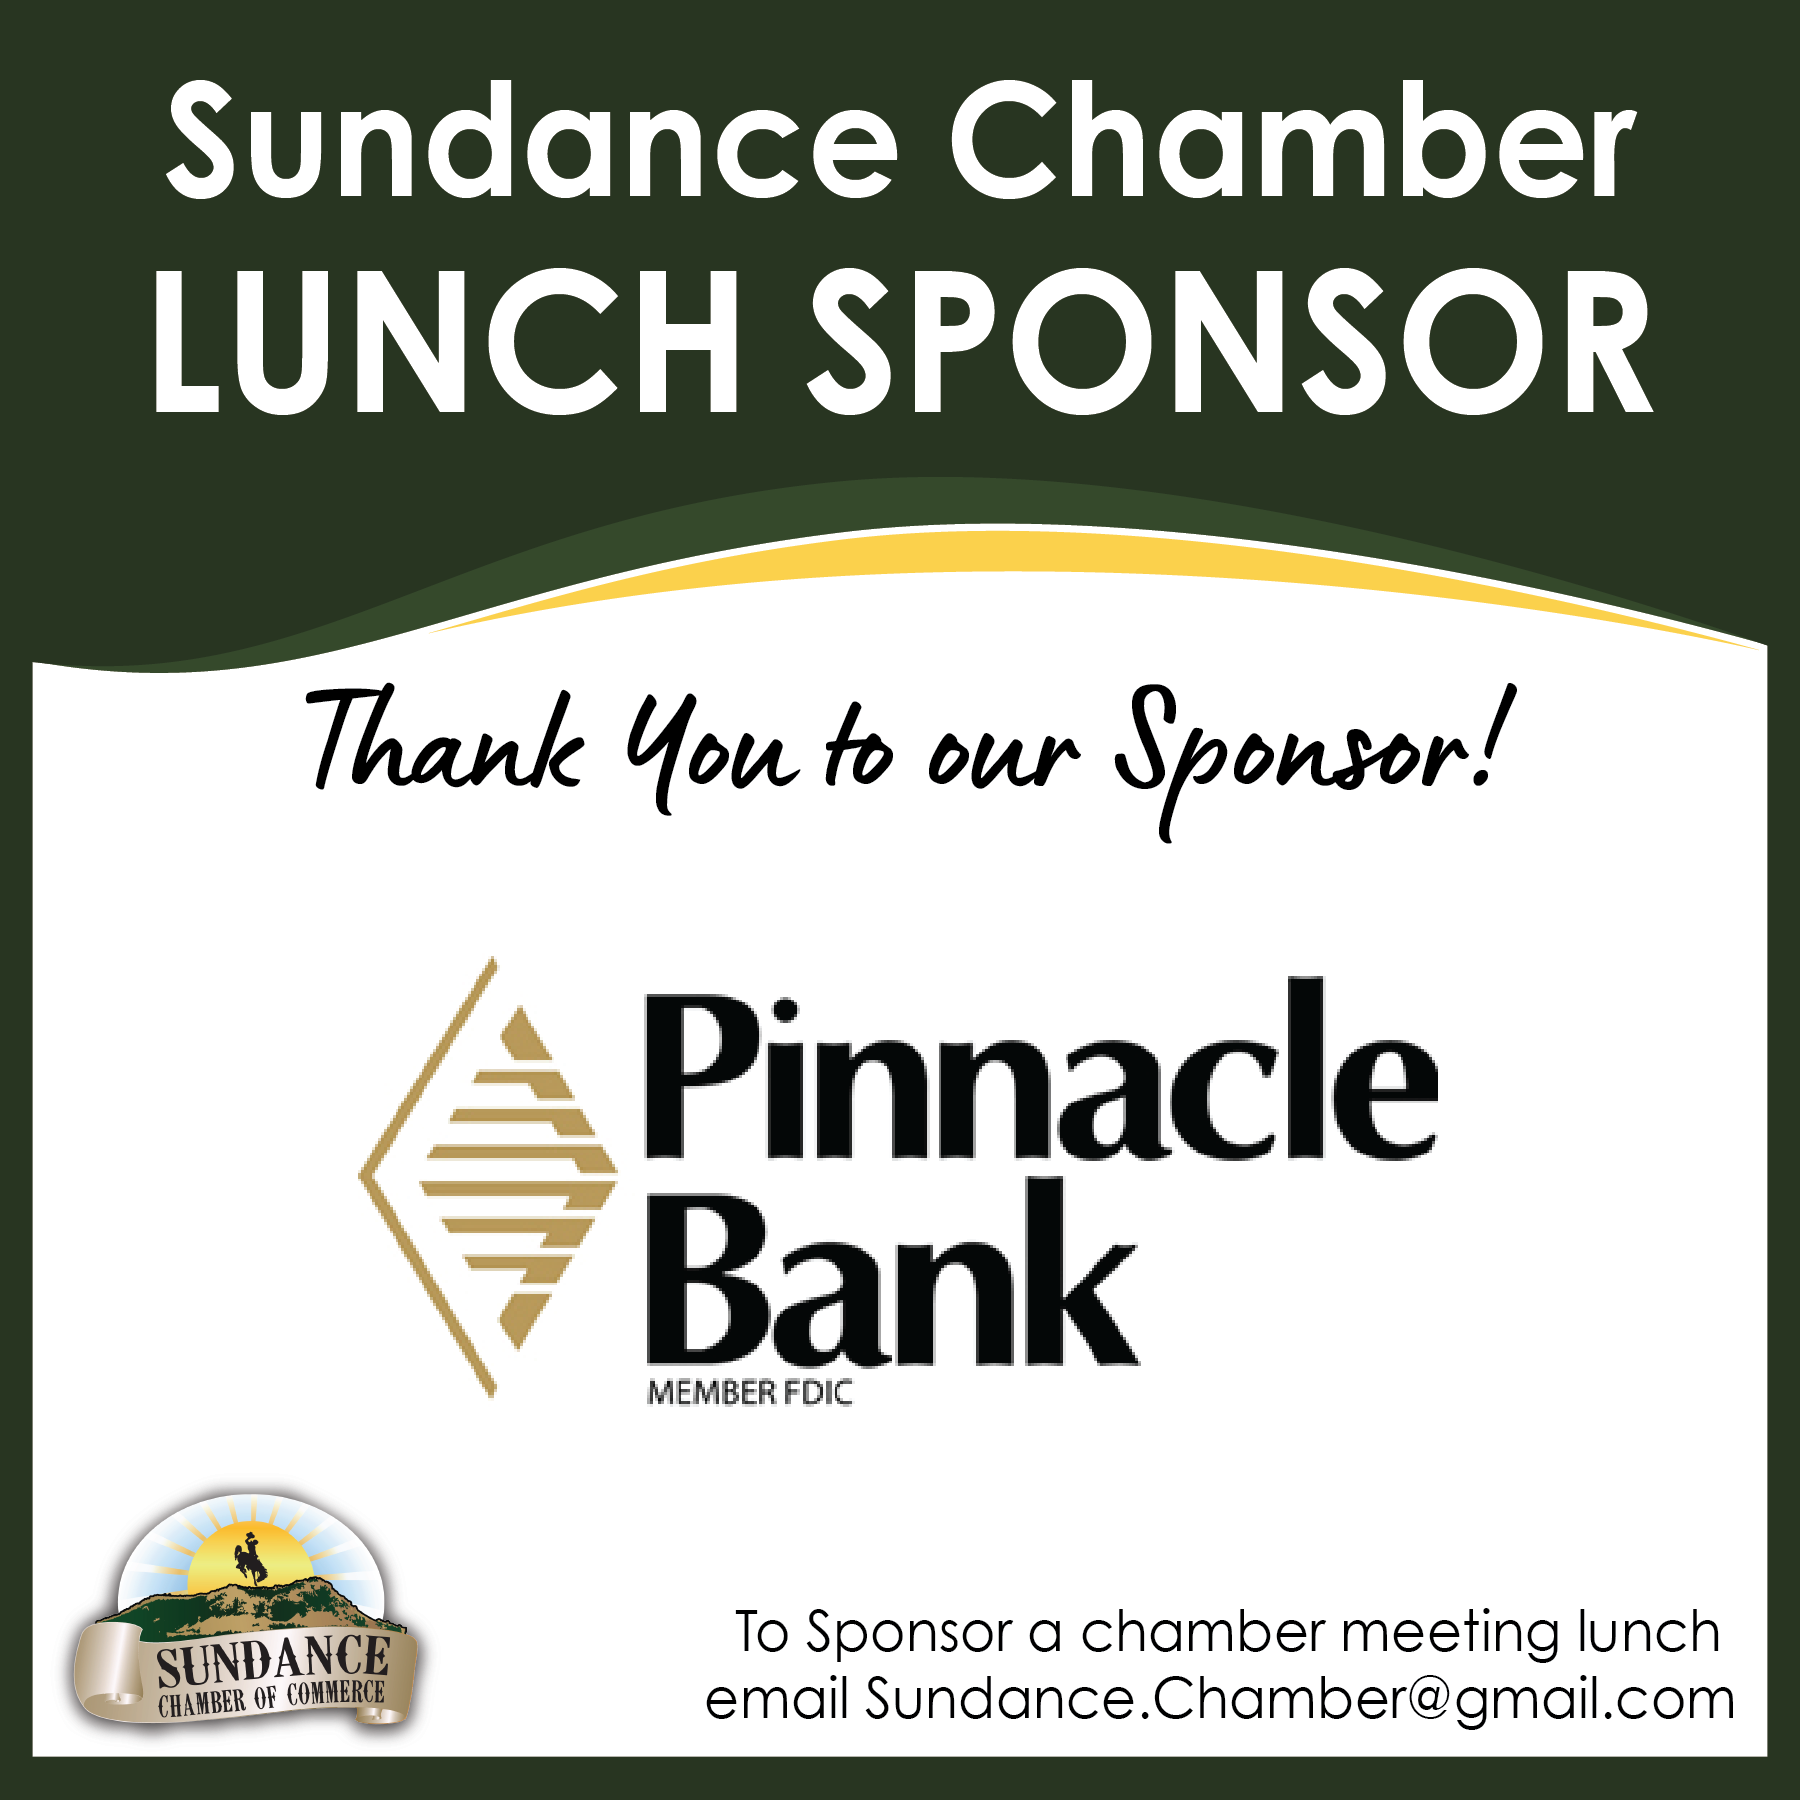 Lunch Sponsor Pinnacle Bank 